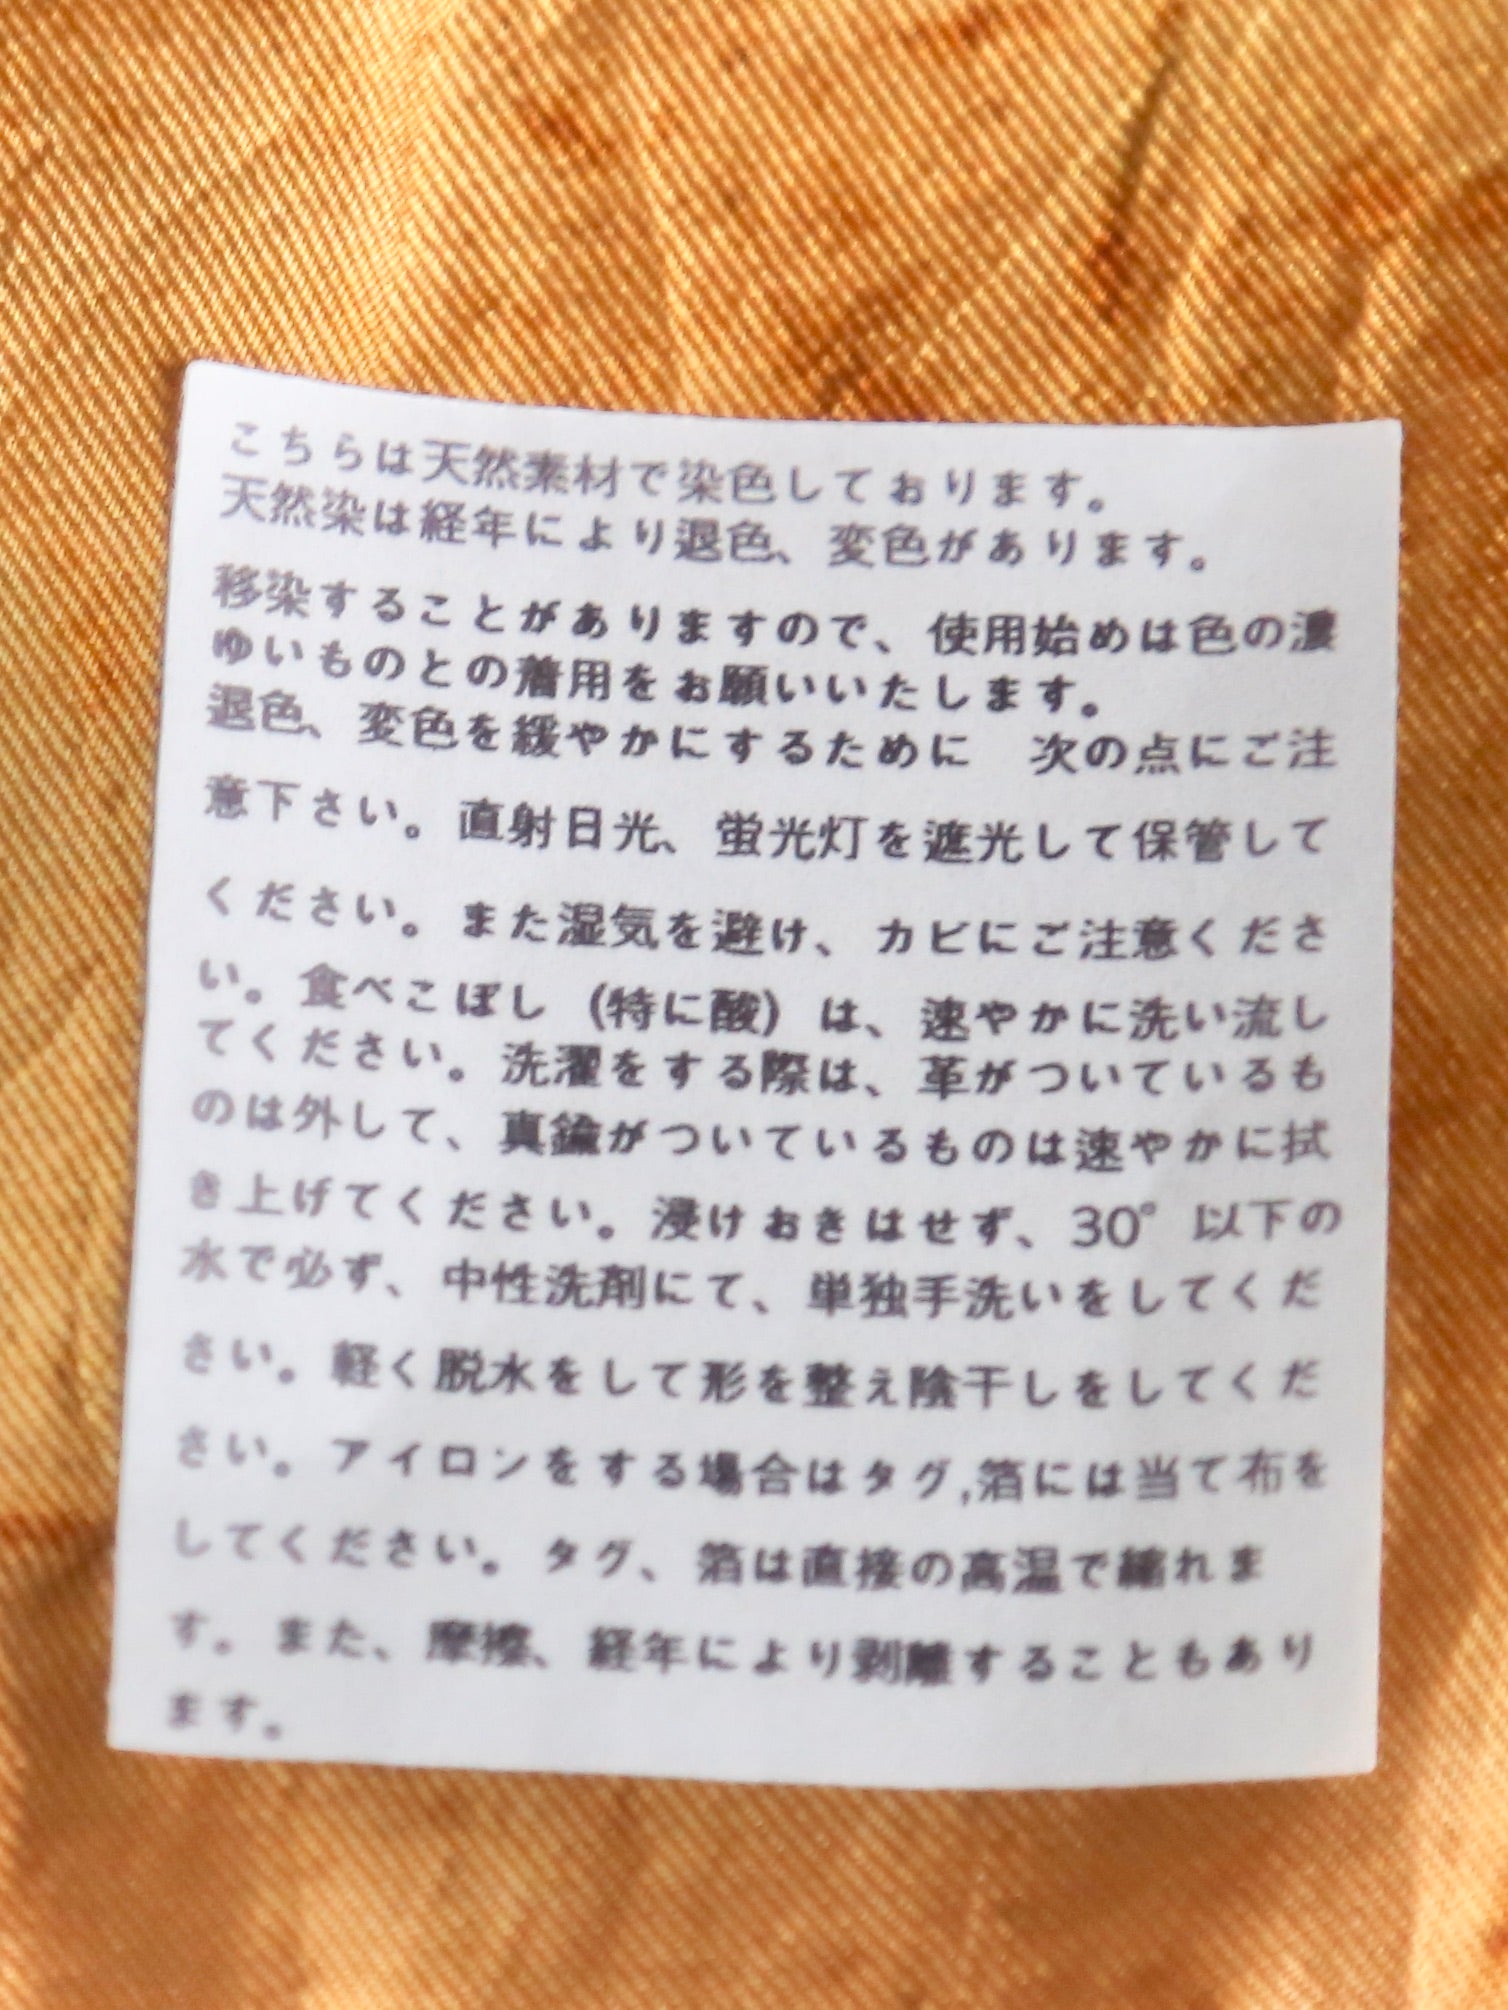 ...et R シルクスカーフ オレンジ系(Urushi,maddar,enju)